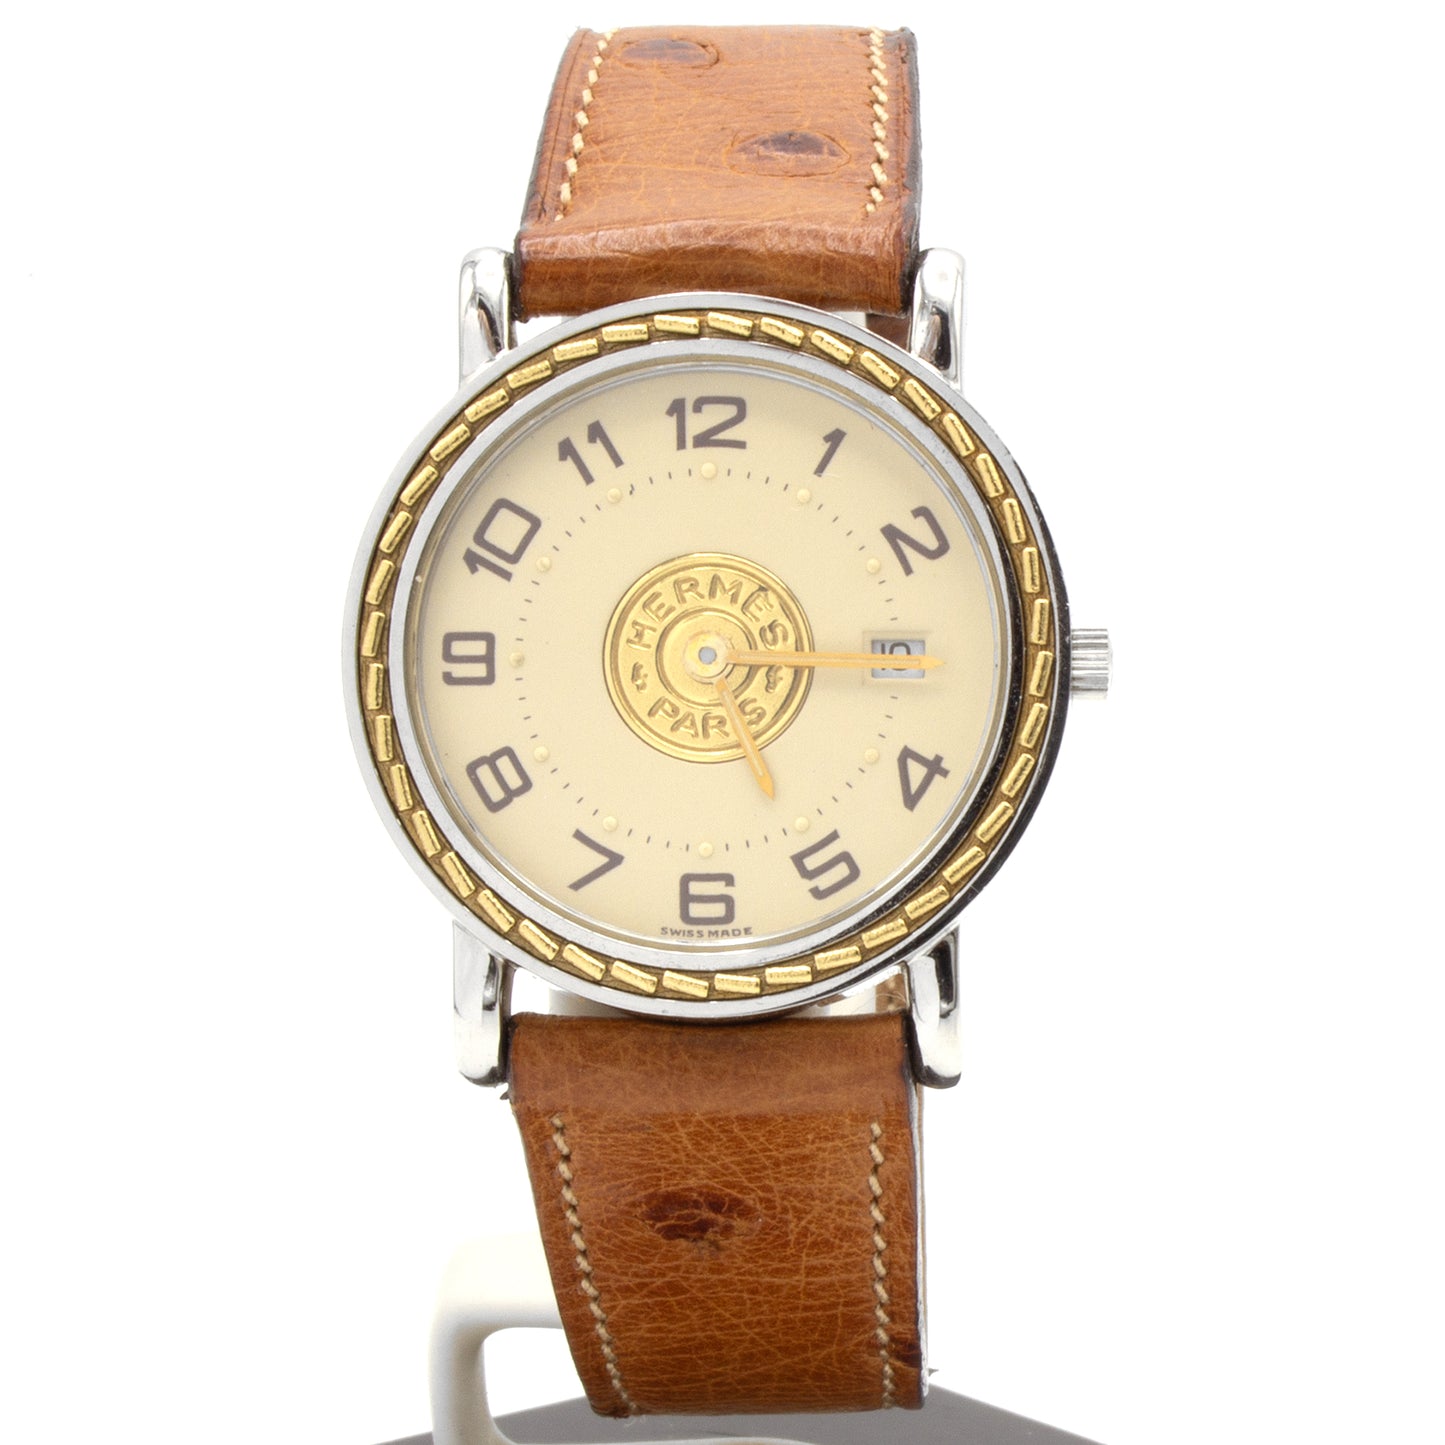 Hermès Sellier 27mm watch